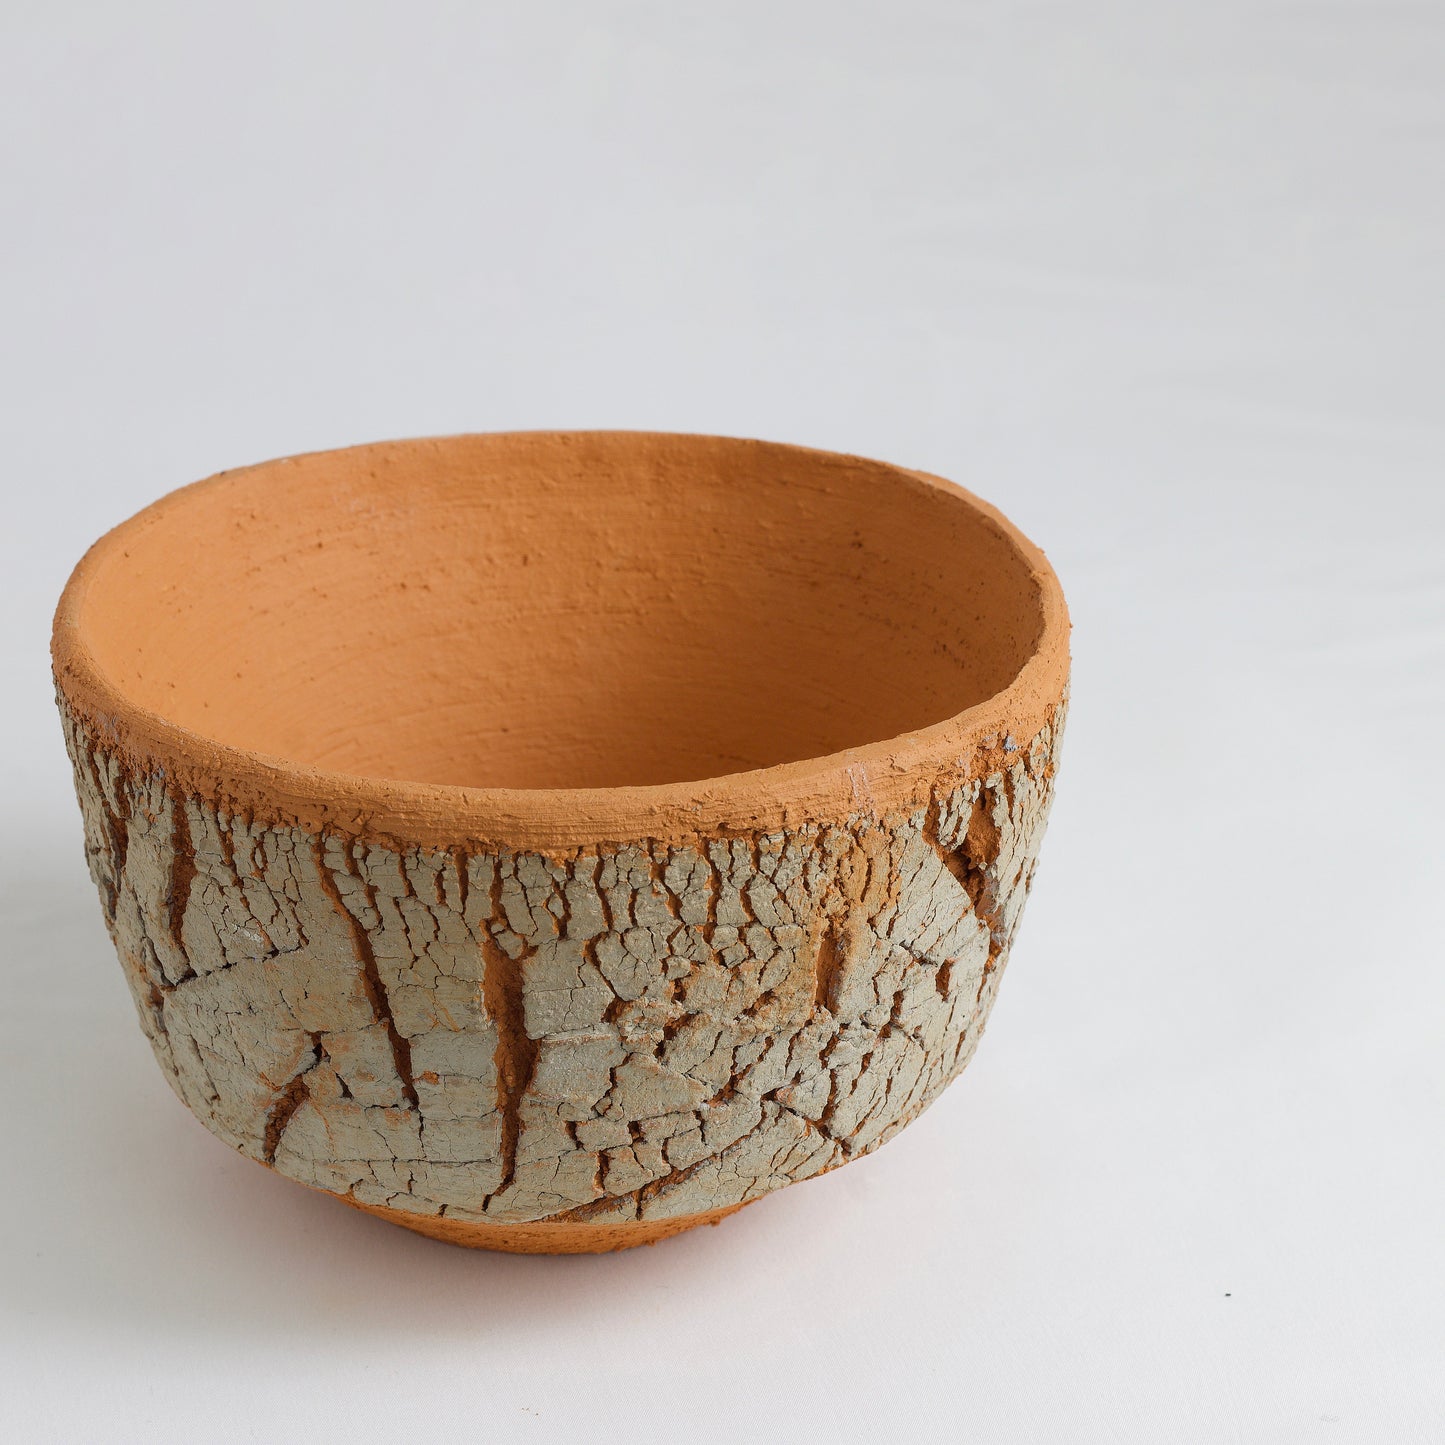 Japanese Arrakis Bowl Cracked Ceramic Orange Grey Dune